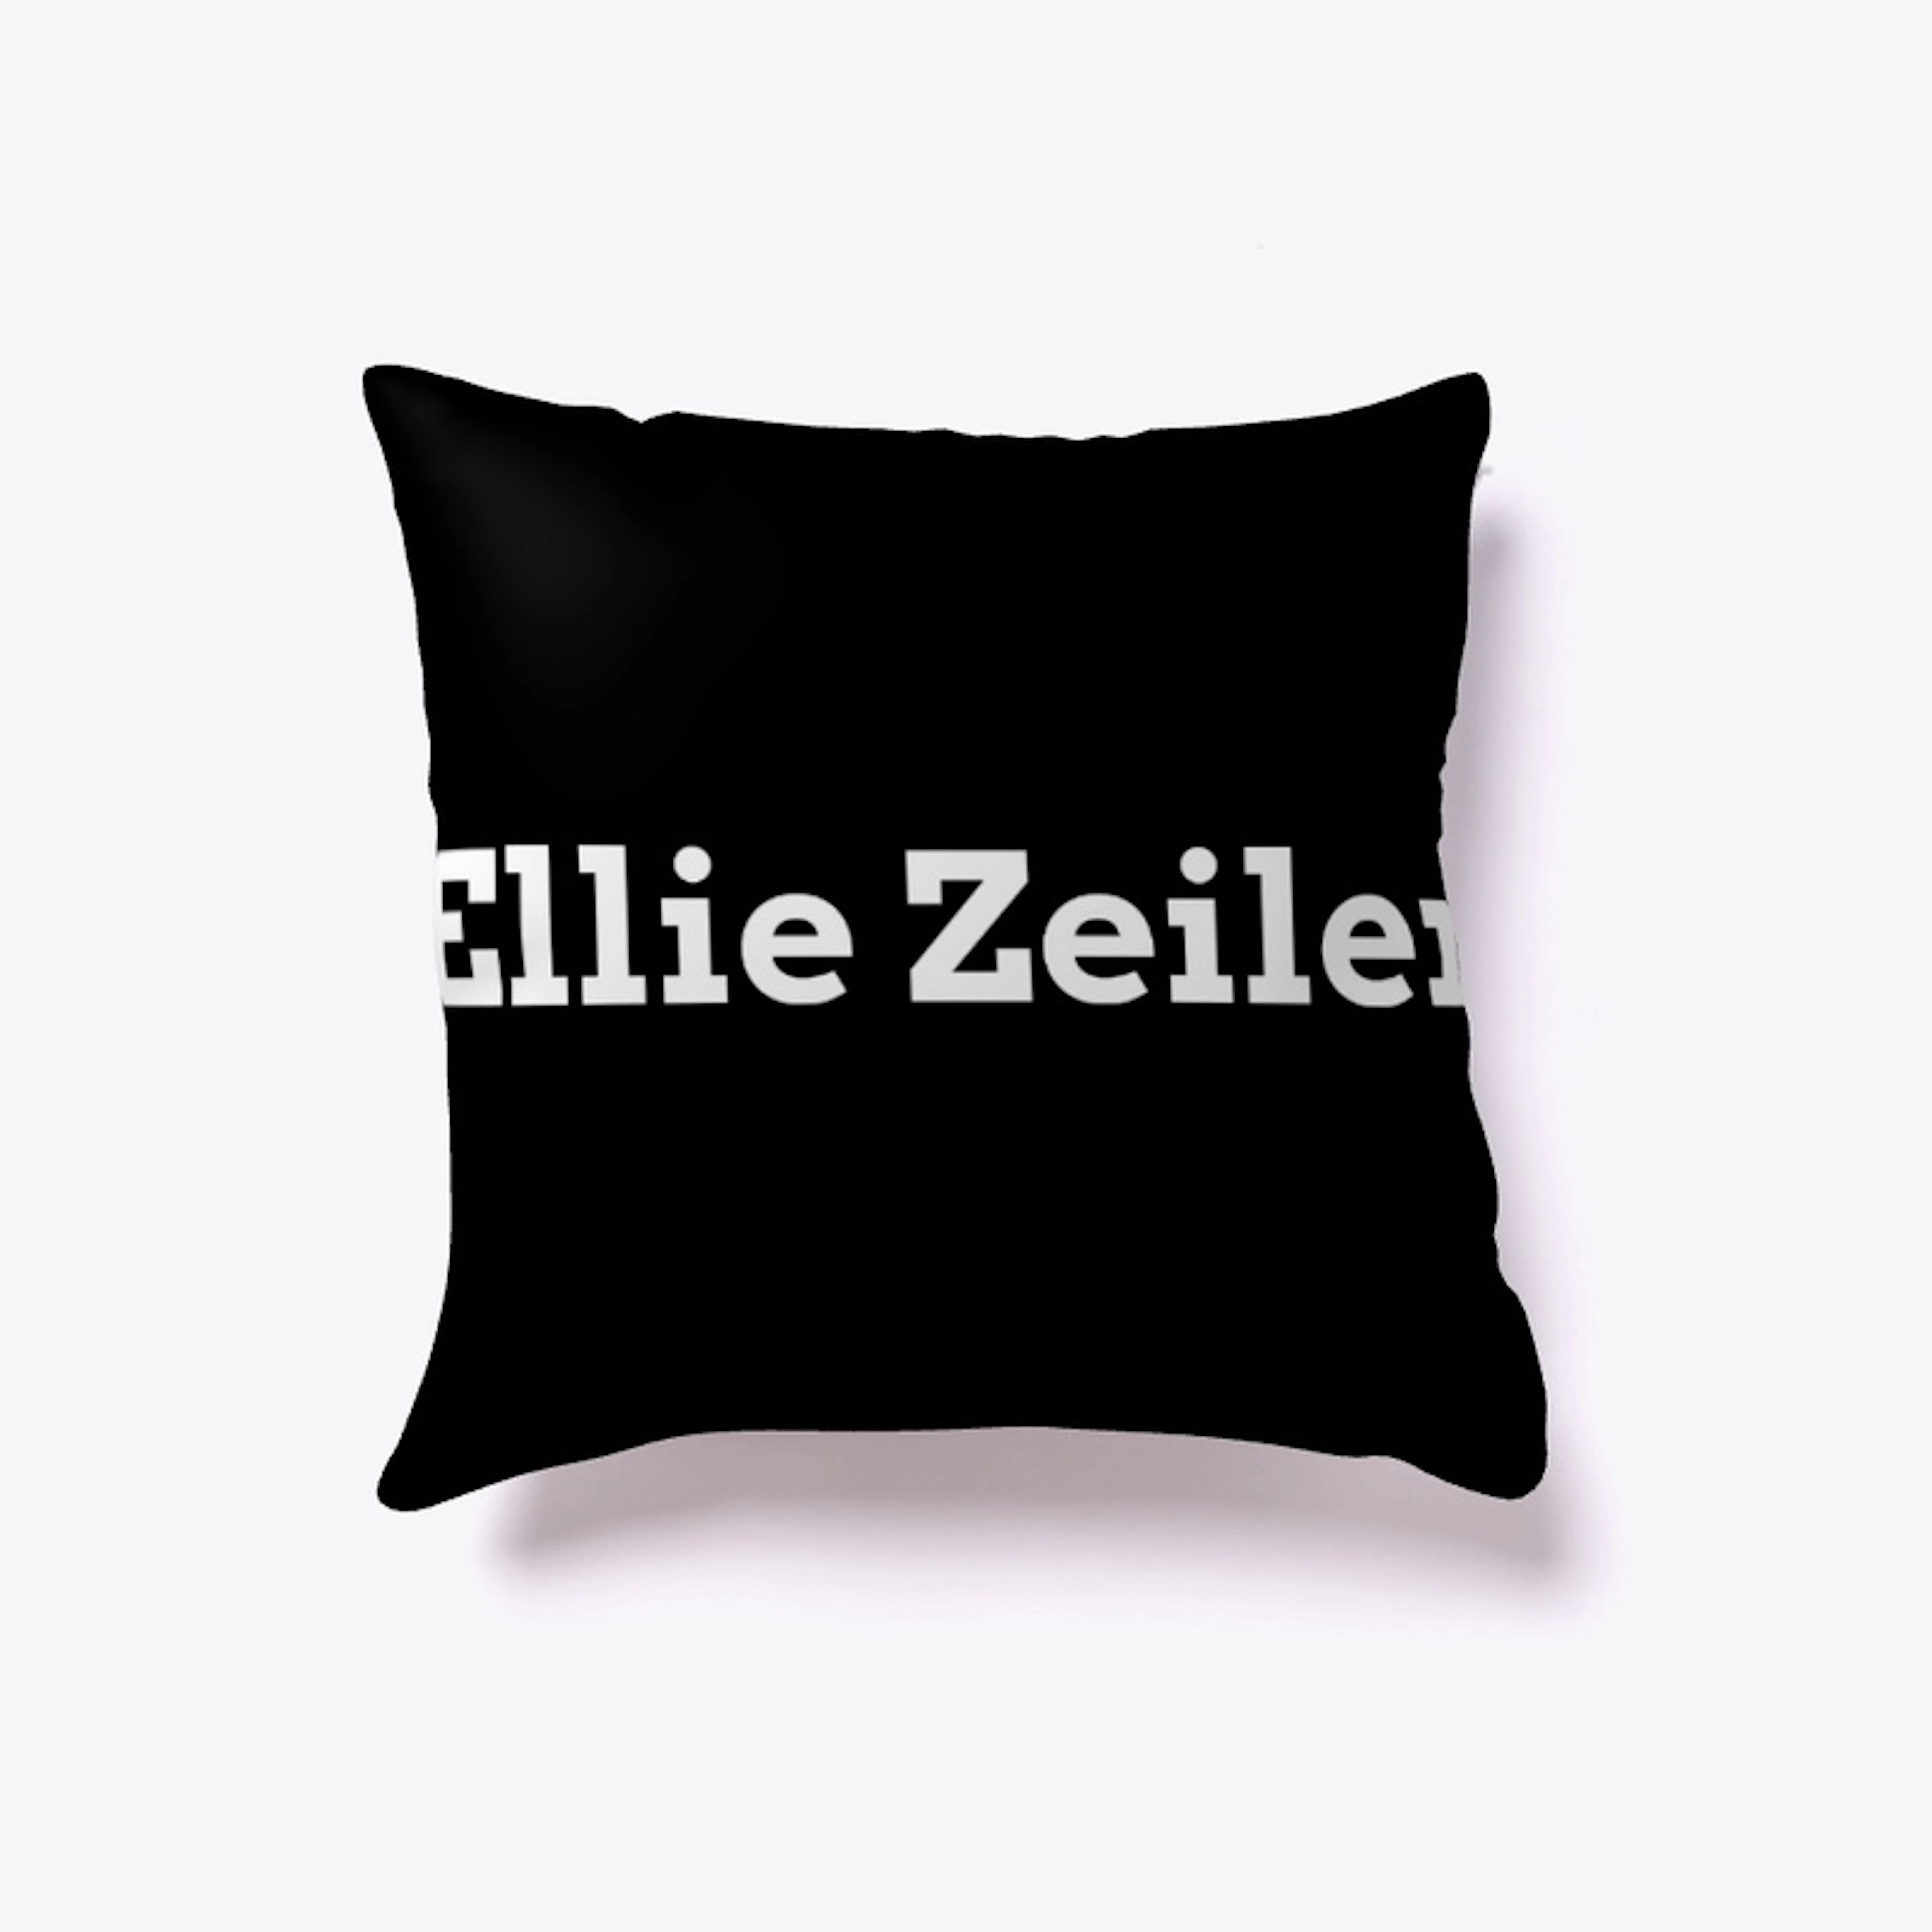 Ellie Zeiler Merch Logo